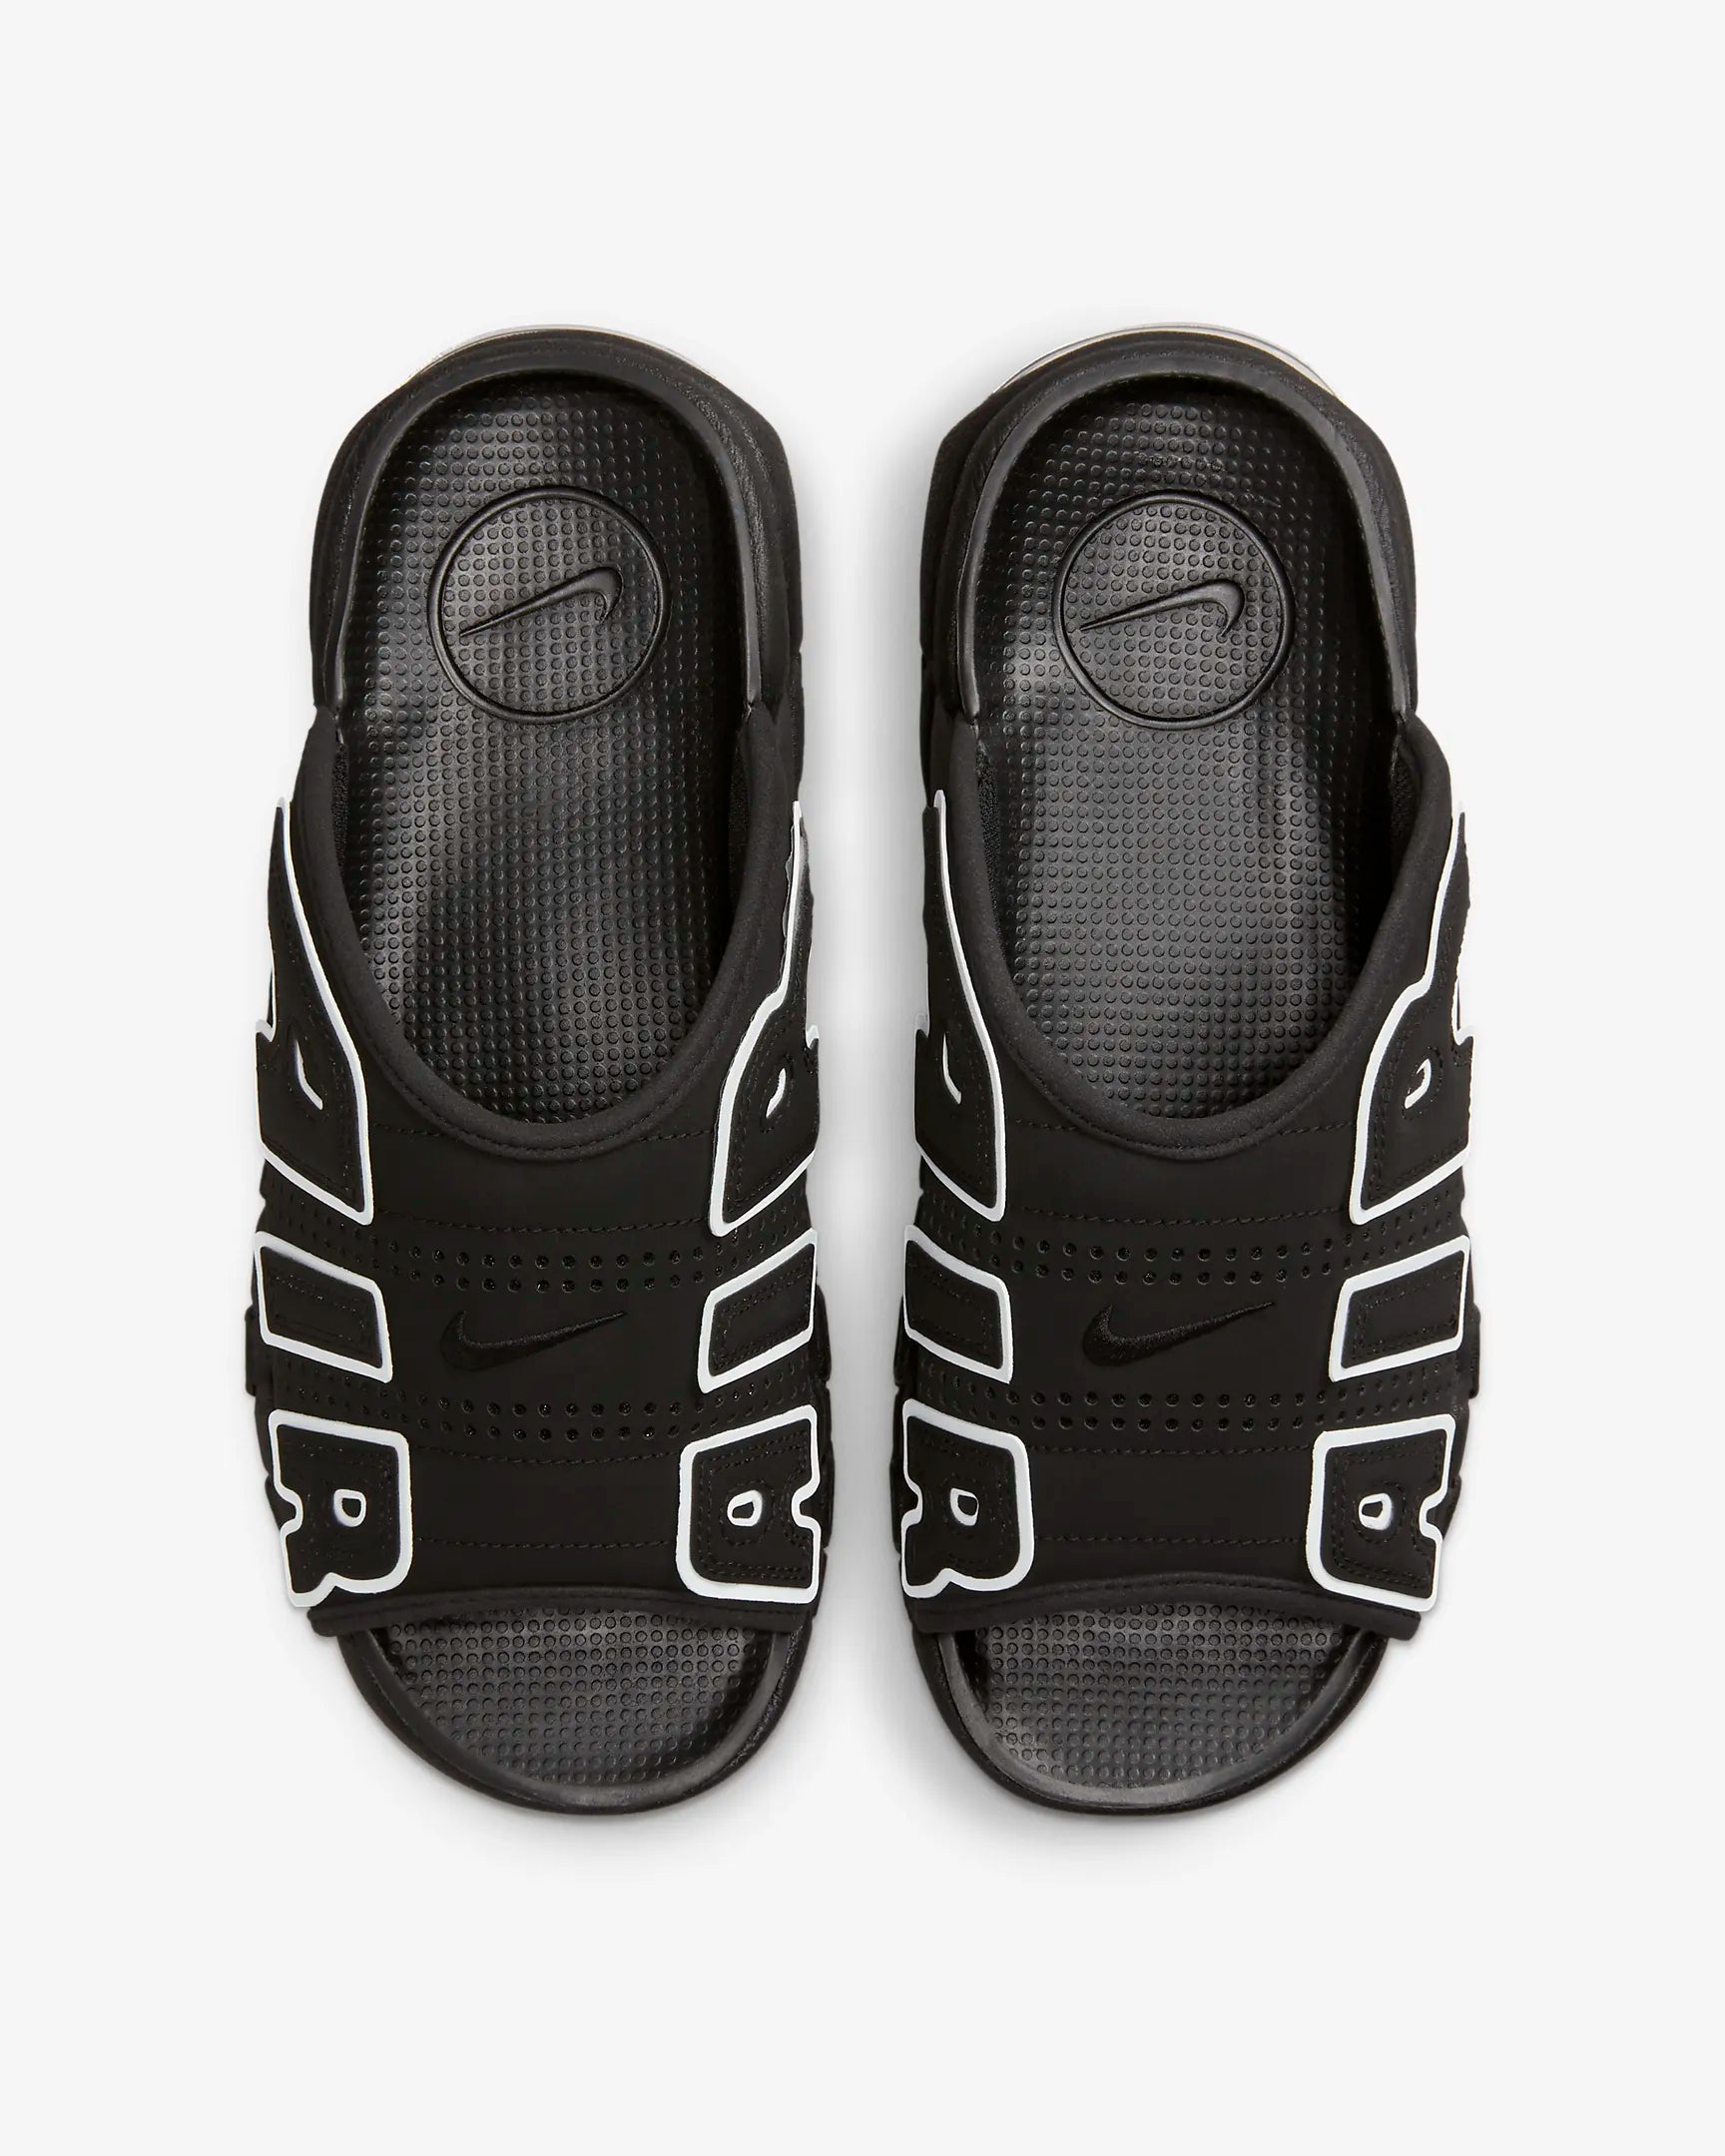 Nike - Men - Air More Uptempo Slide - Black/White - Nohble